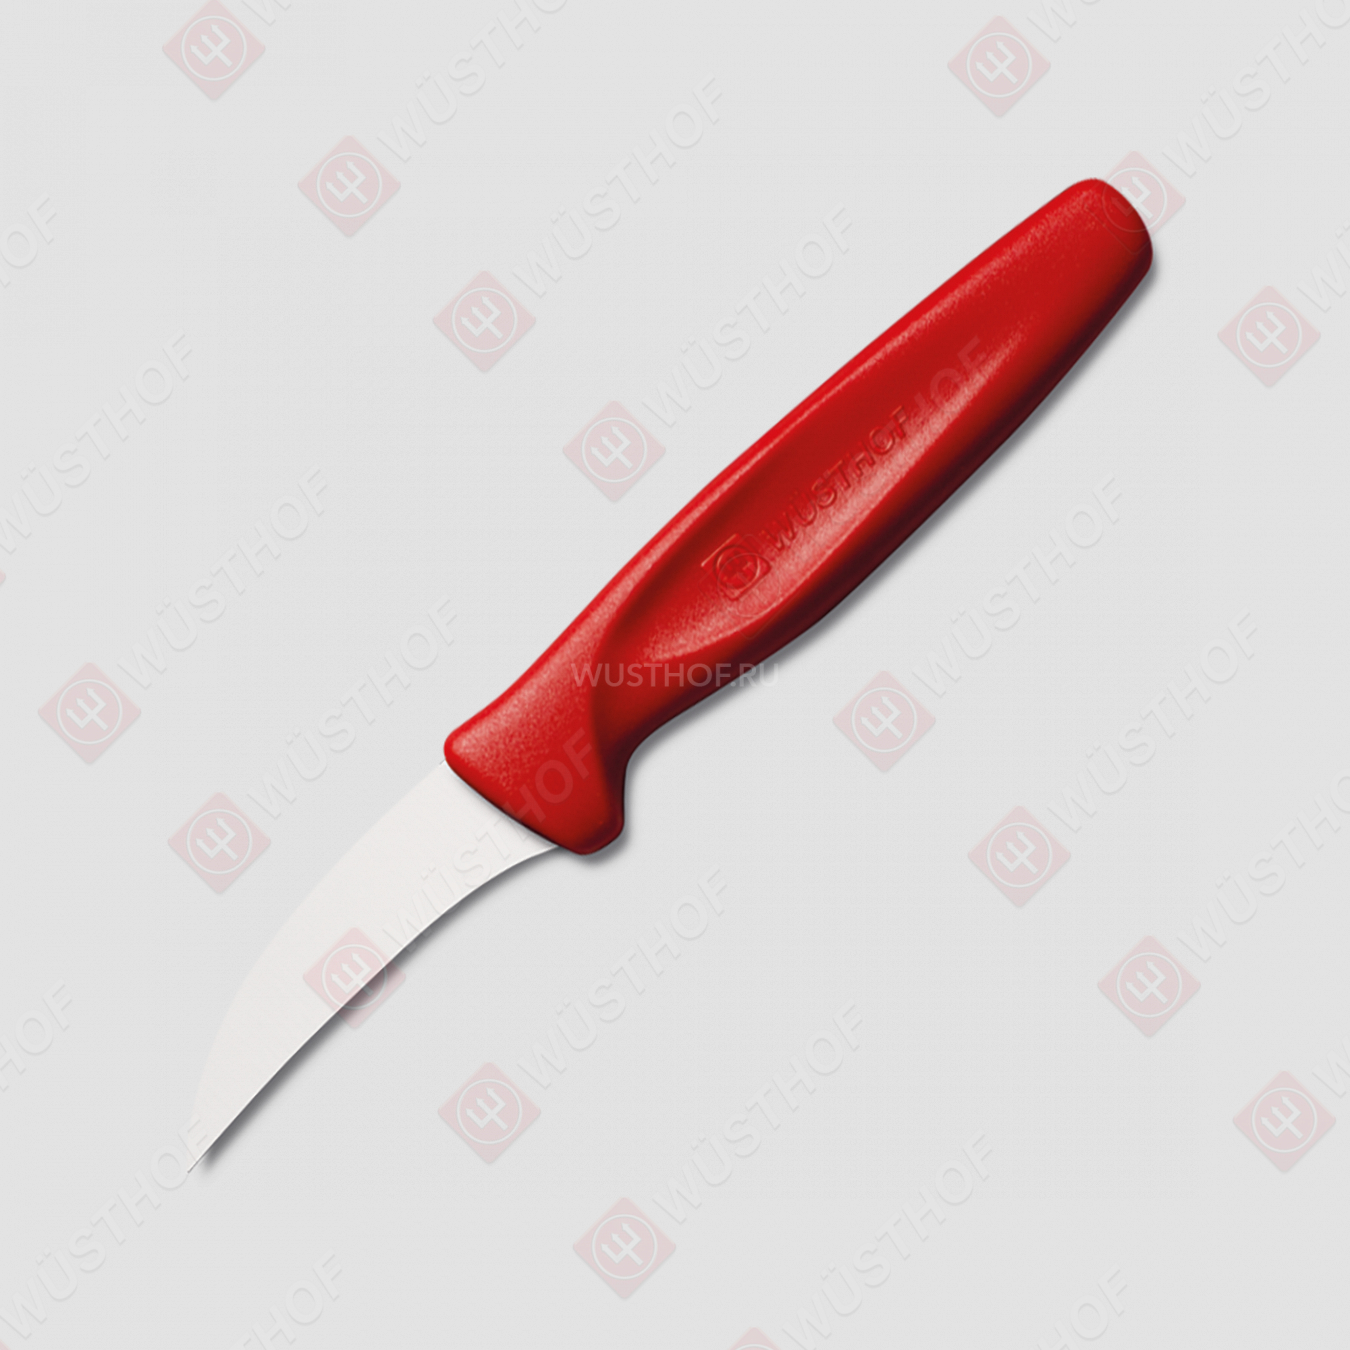 Нож кухонный для чистки овощей 6 см, рукоять красная, серия Sharp Fresh Colourful, WUESTHOF, Золинген, Германия